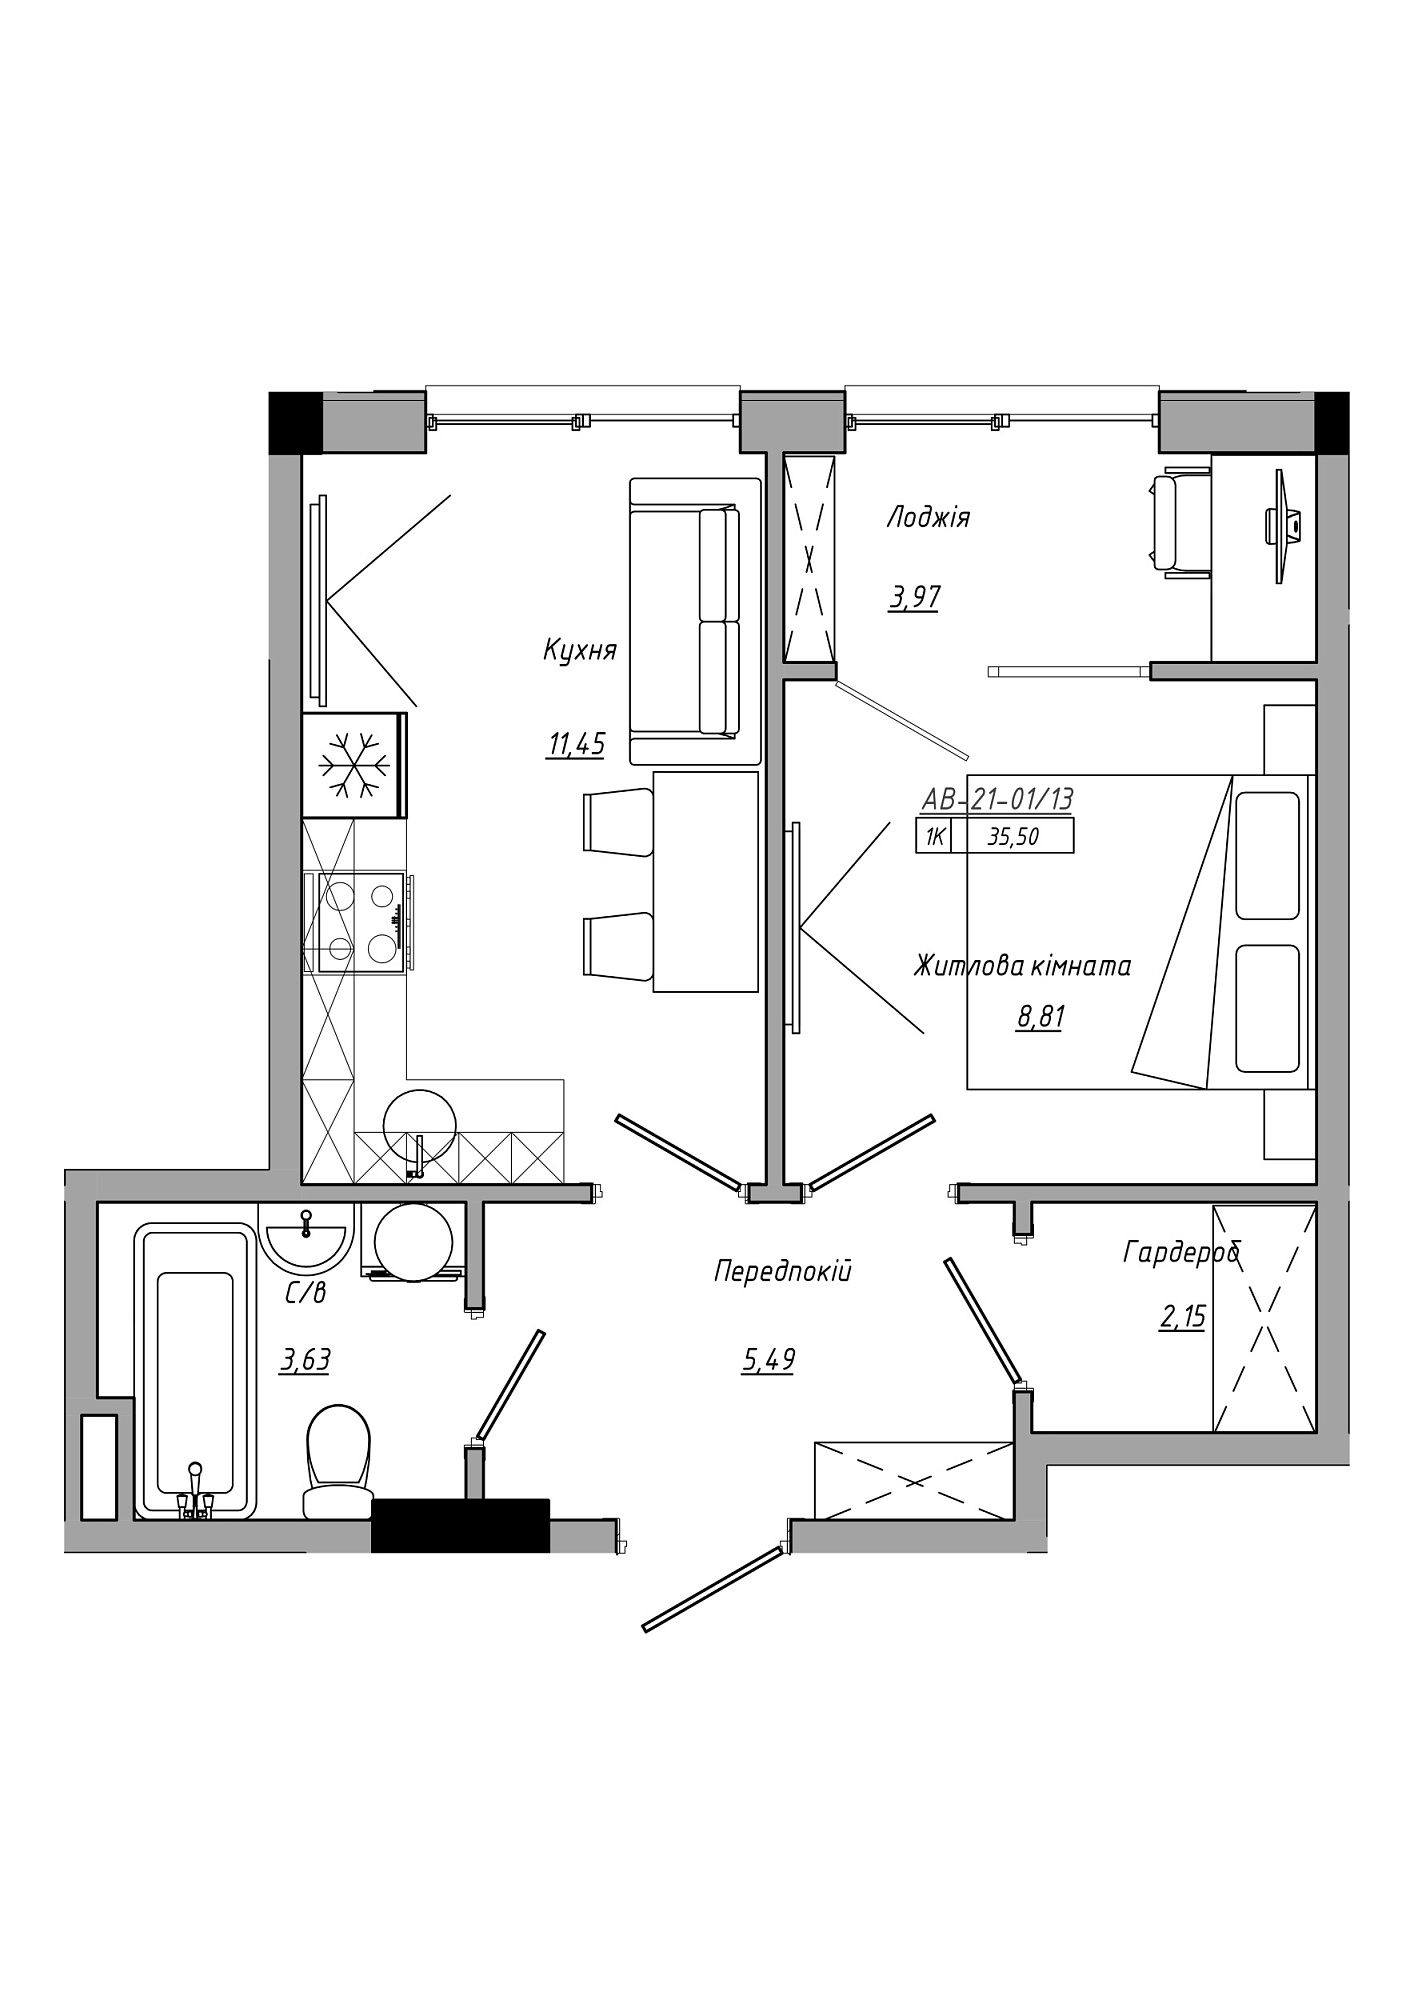 Планировка 1-к квартира площей 35.5м2, AB-21-01/00013.